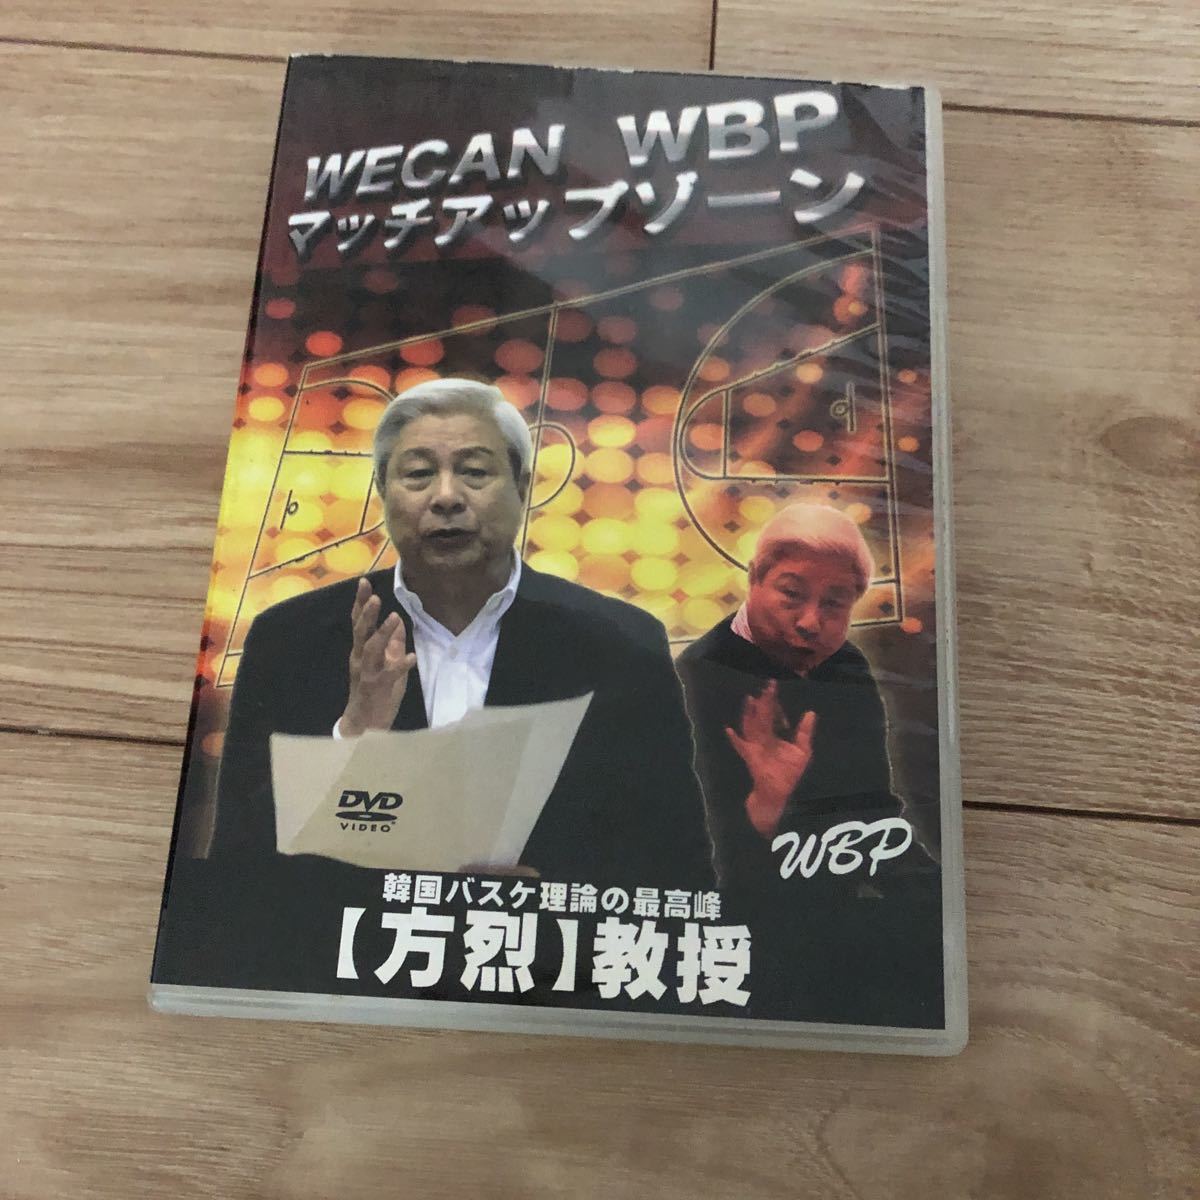 安価 ワタナベ 全国 program basketball can we 青山学院WBP DVD